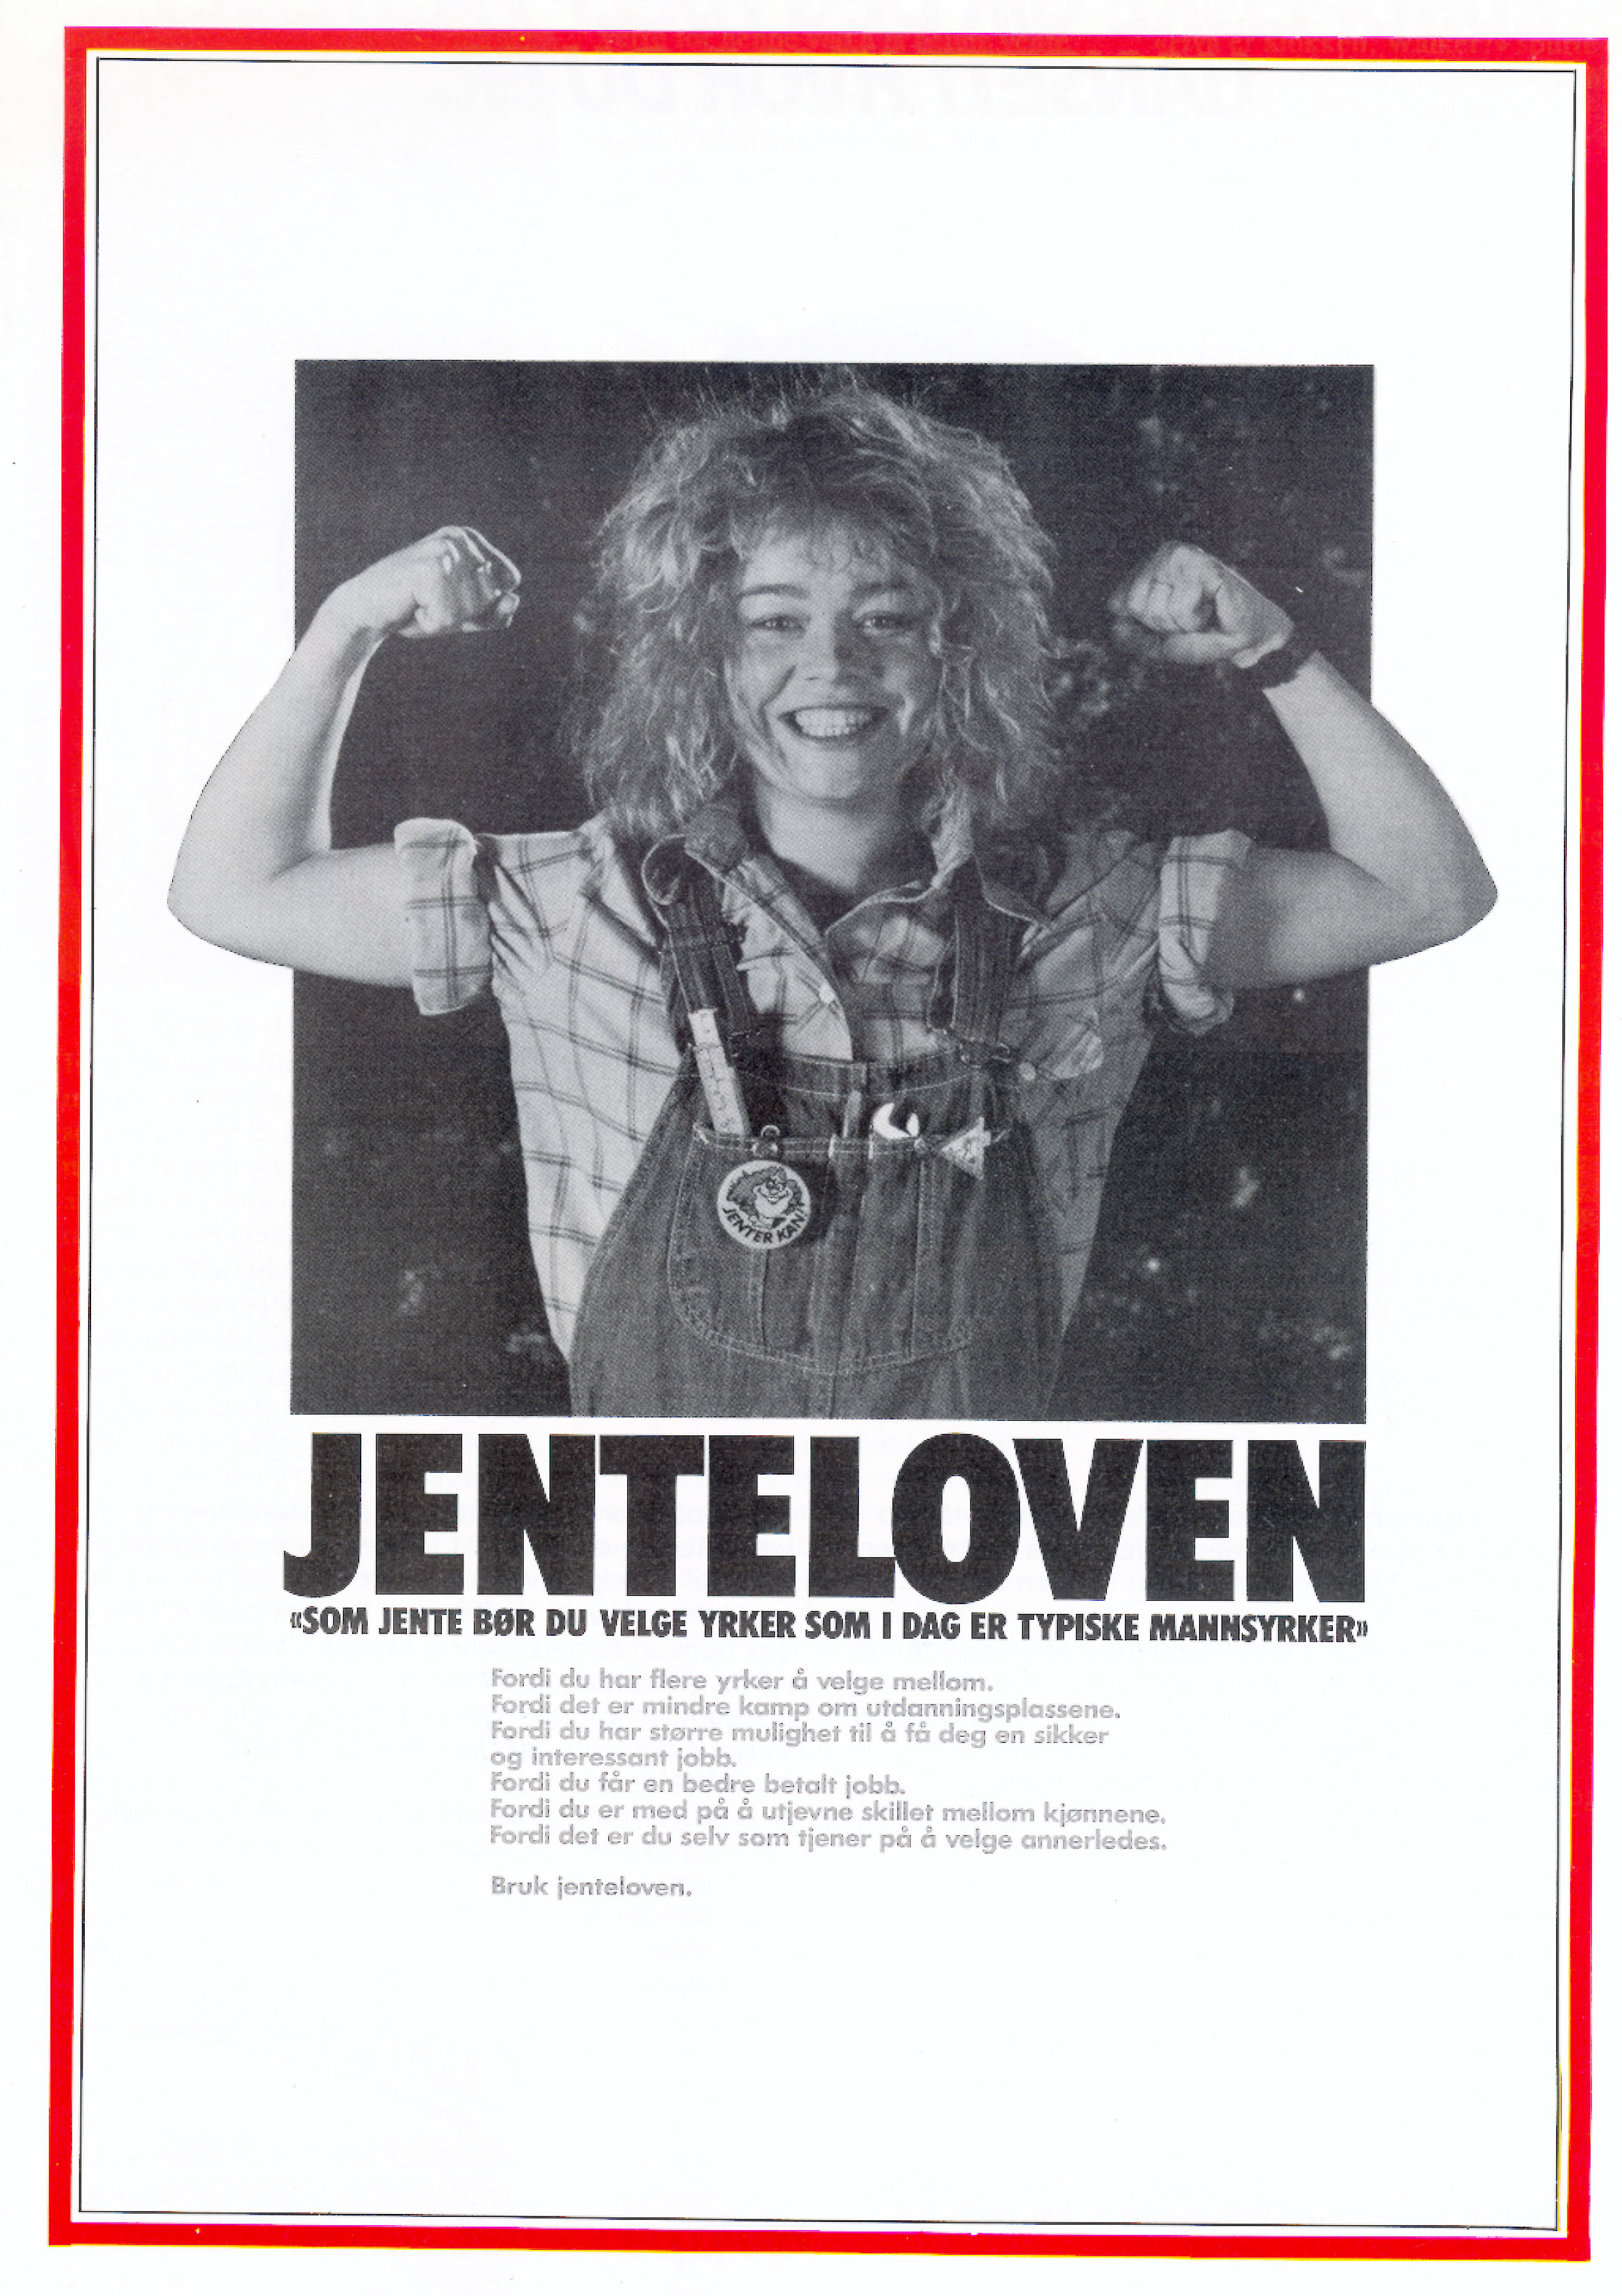 Jenteloven (Streiftog nr. 1 1985)